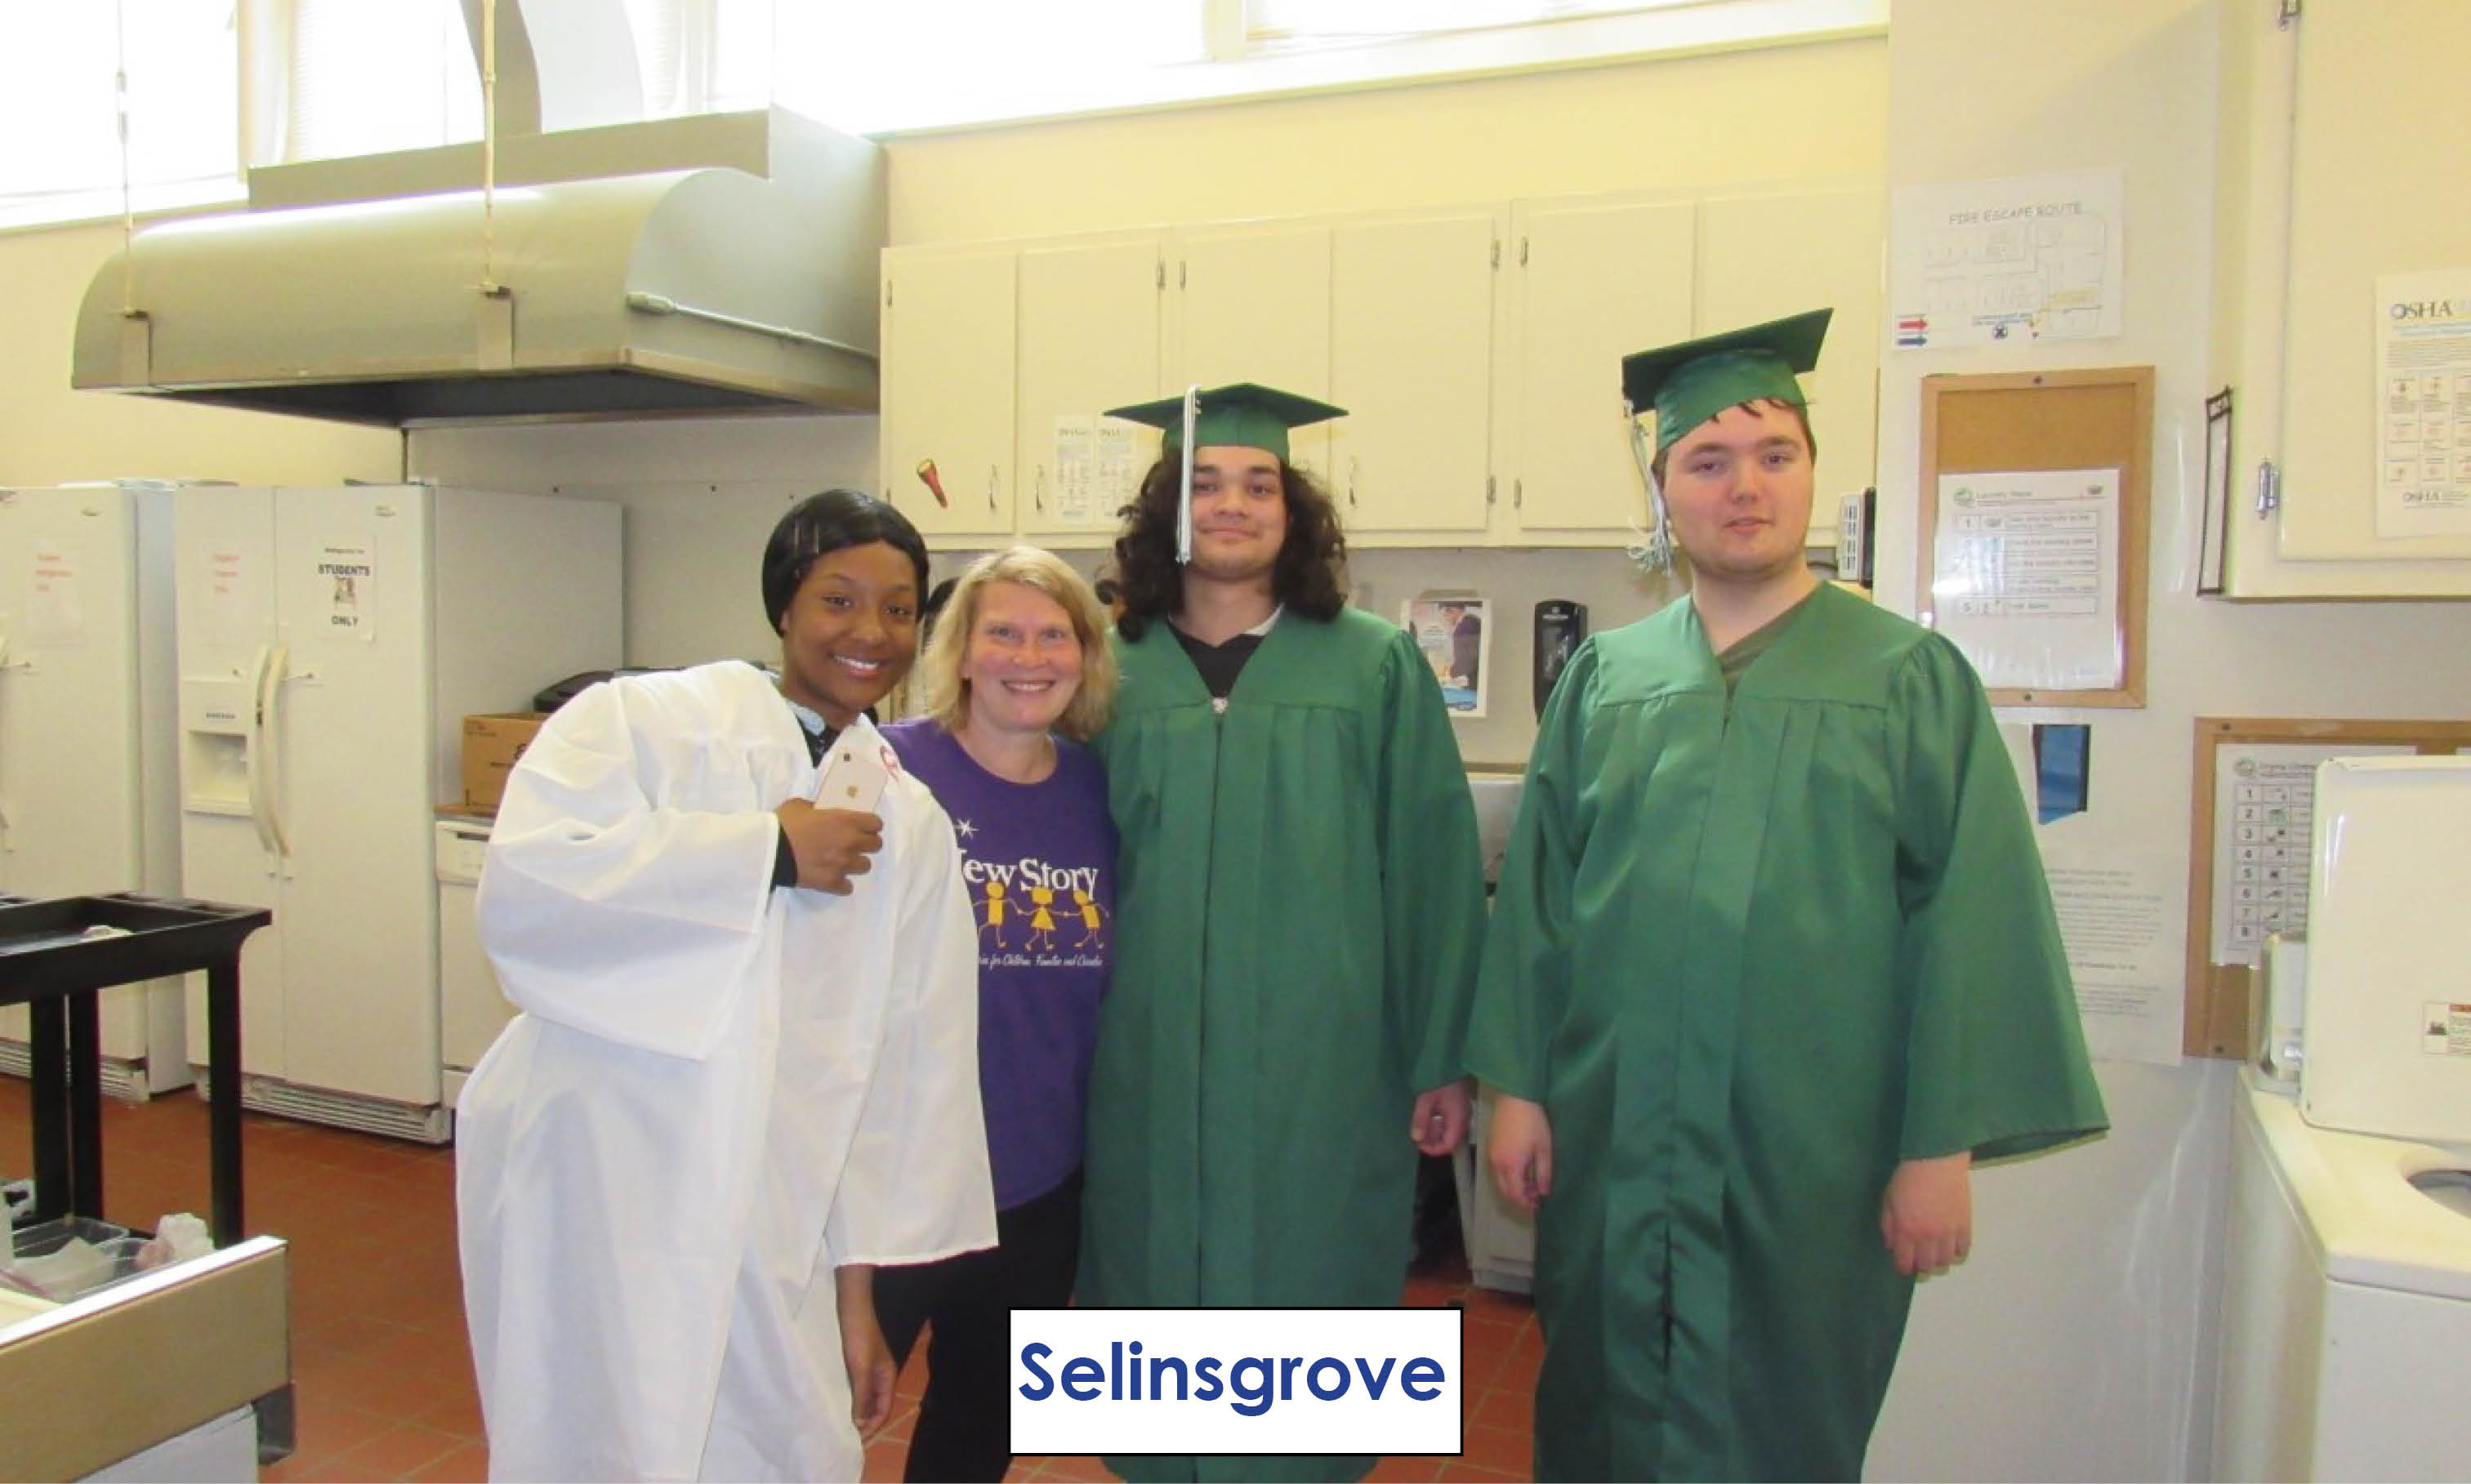 Selinsgrove graduation - May 26, 2022